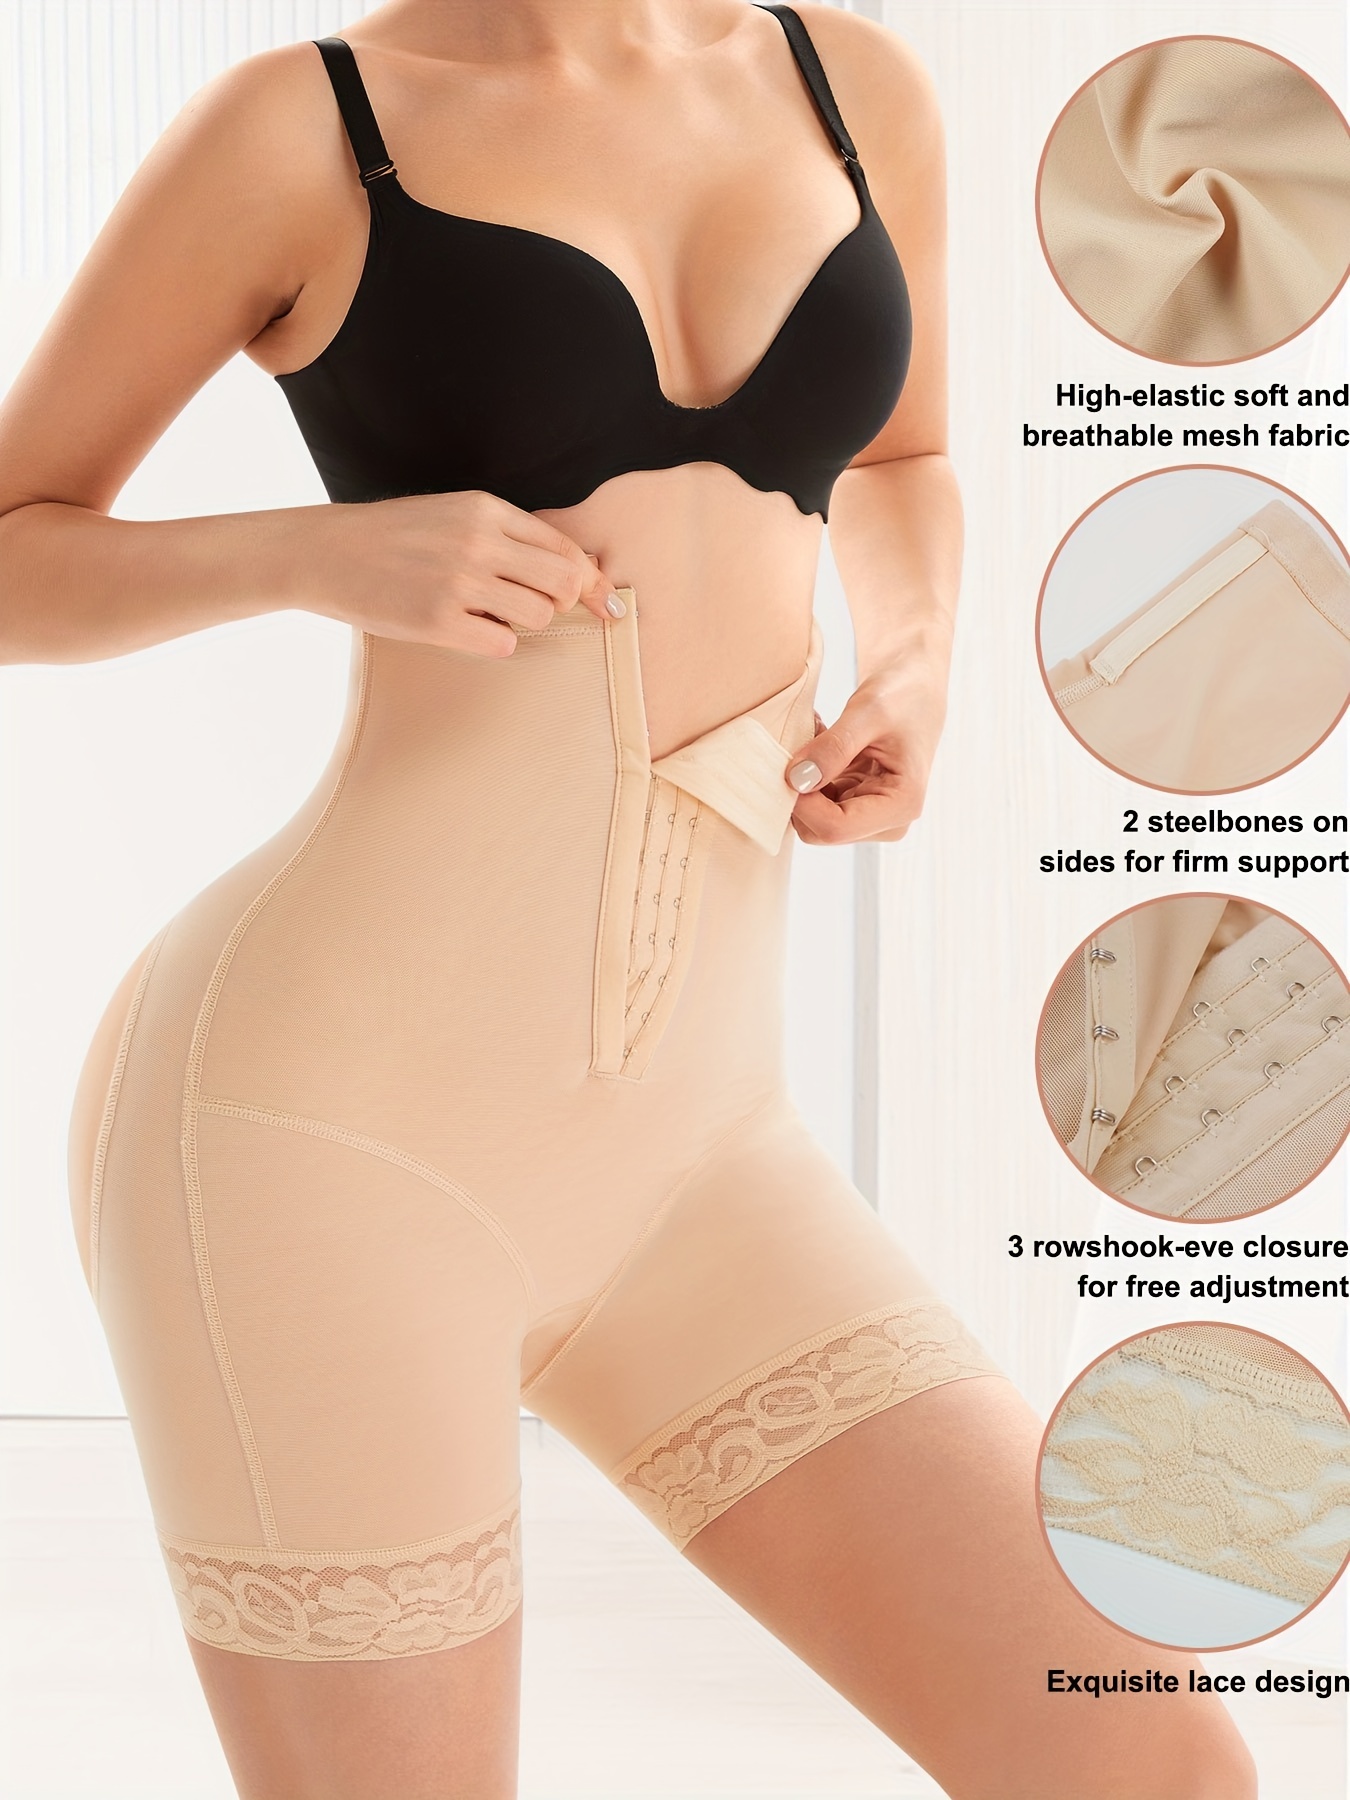 Women's High Waist Slim Body Trimmer Panties Tummy Control Underwear US